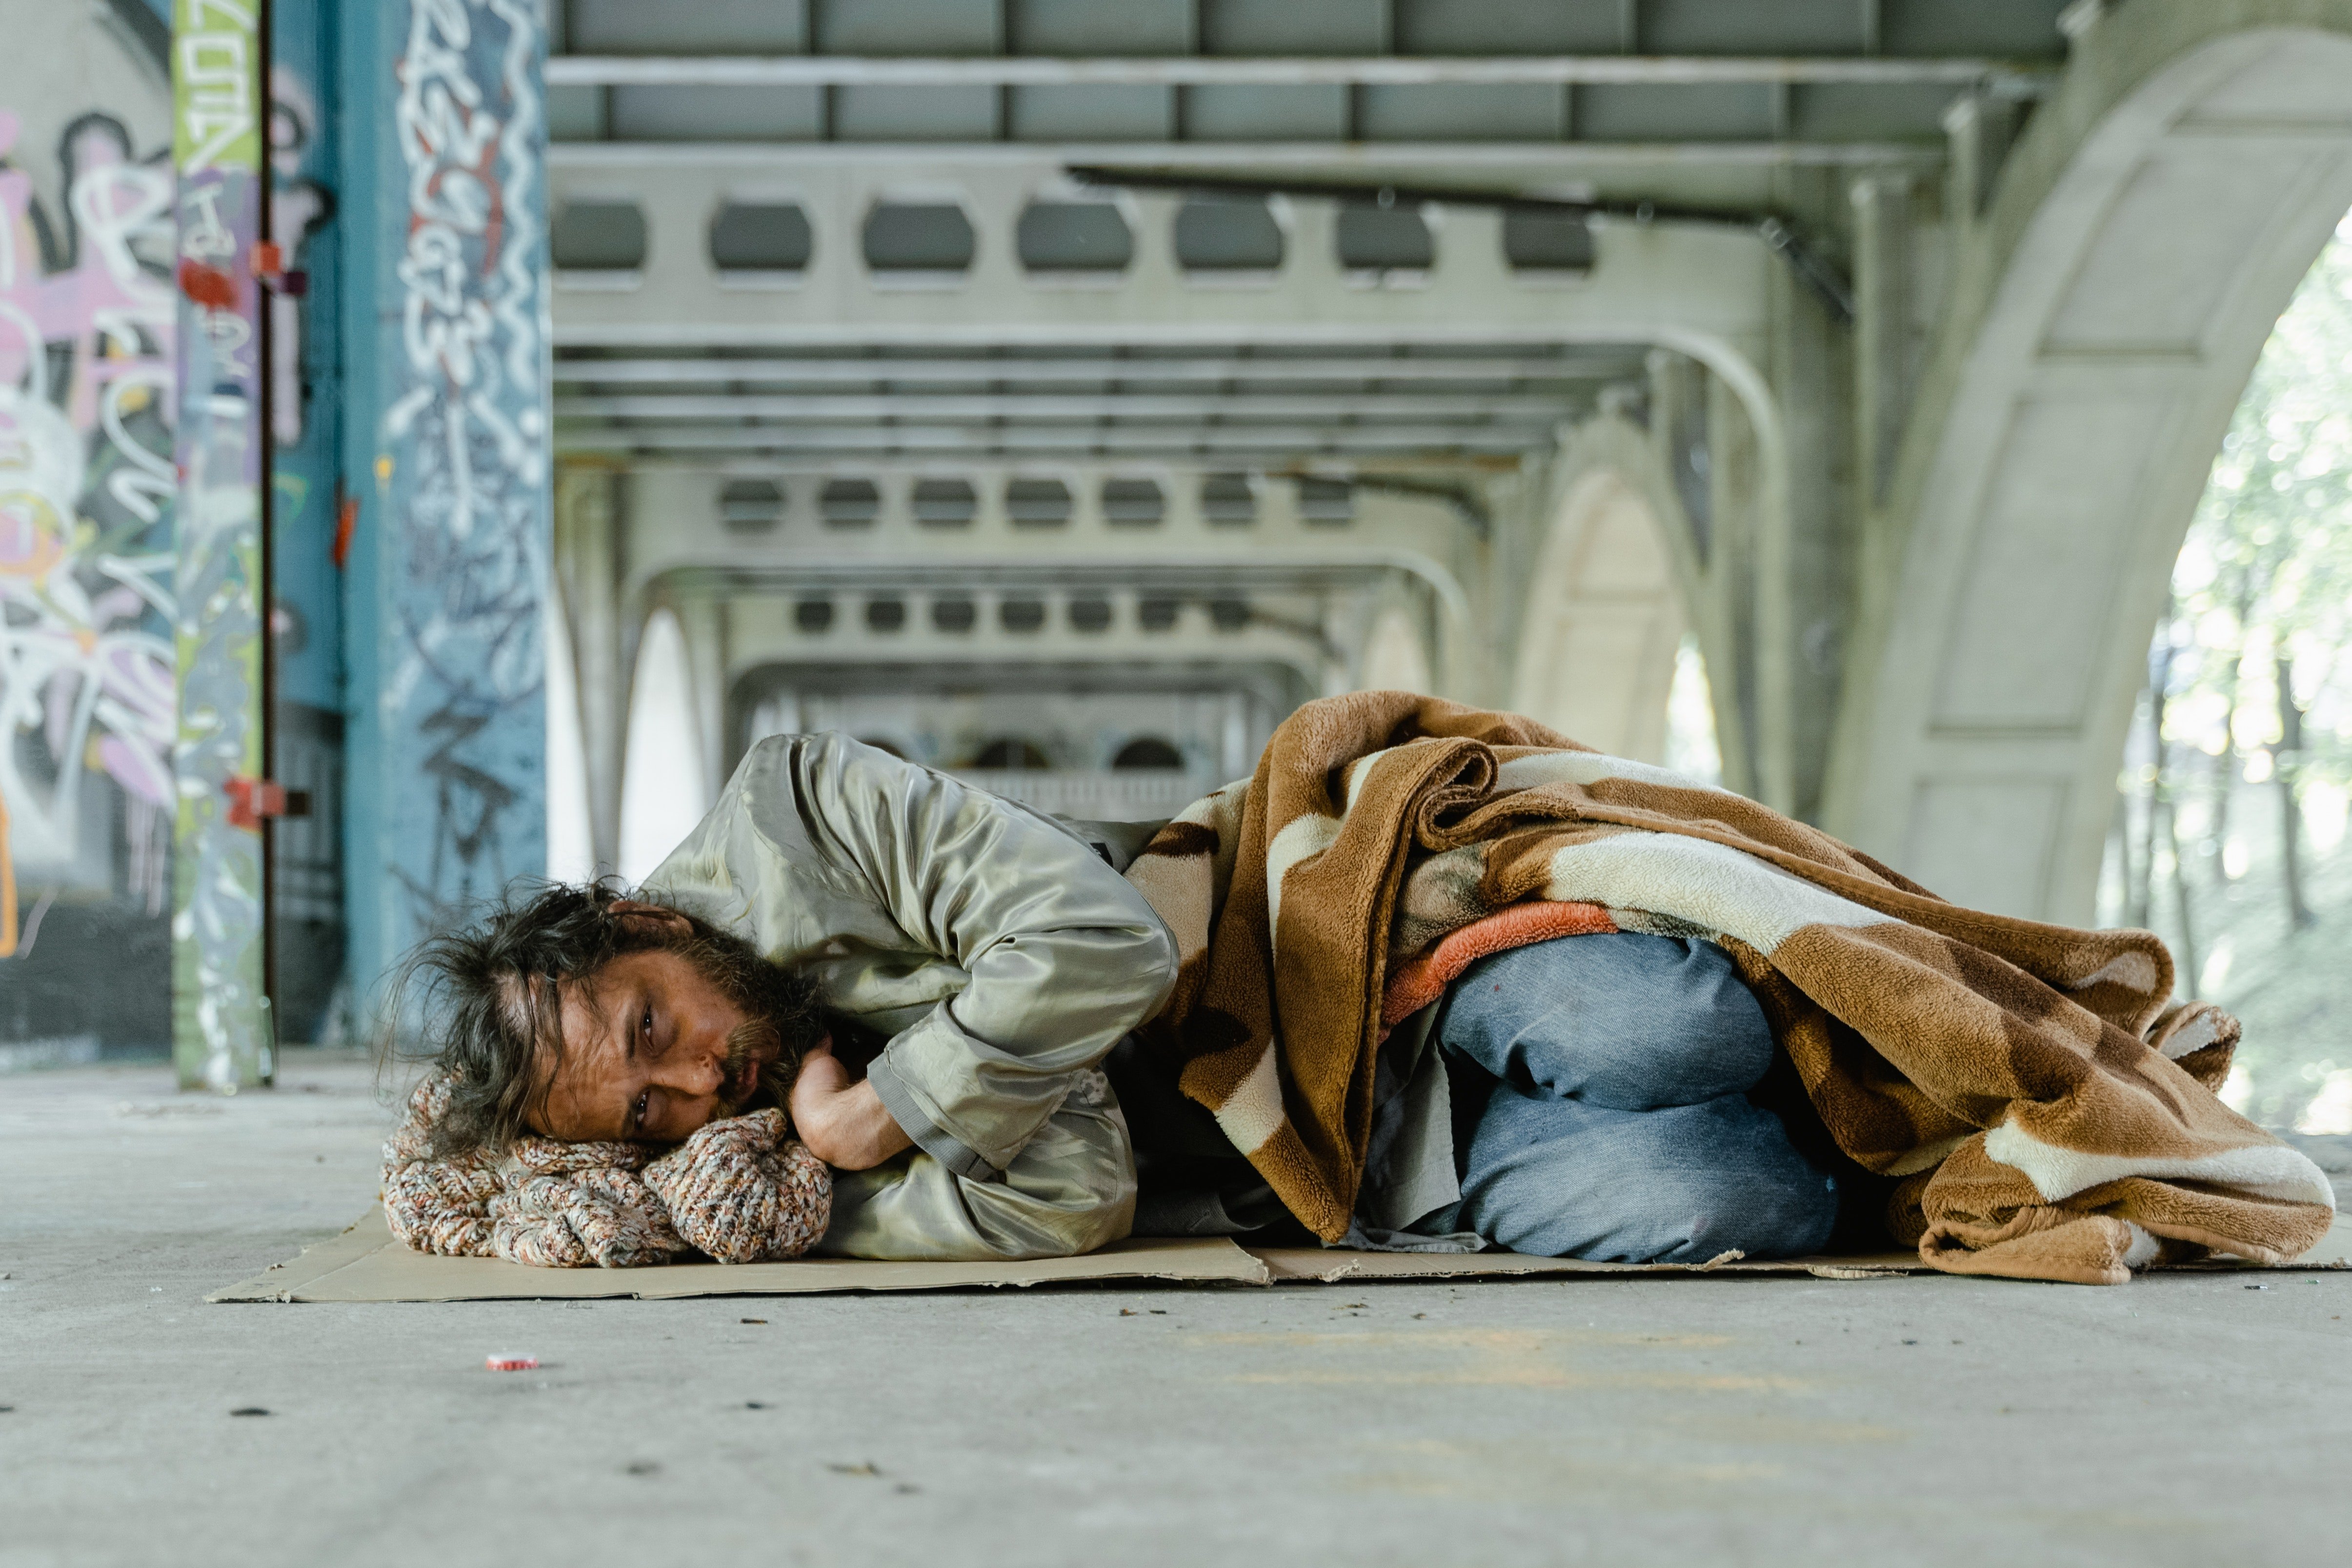 Hombre sin hogar recostado sobre el suelo. | Foto: Pexels